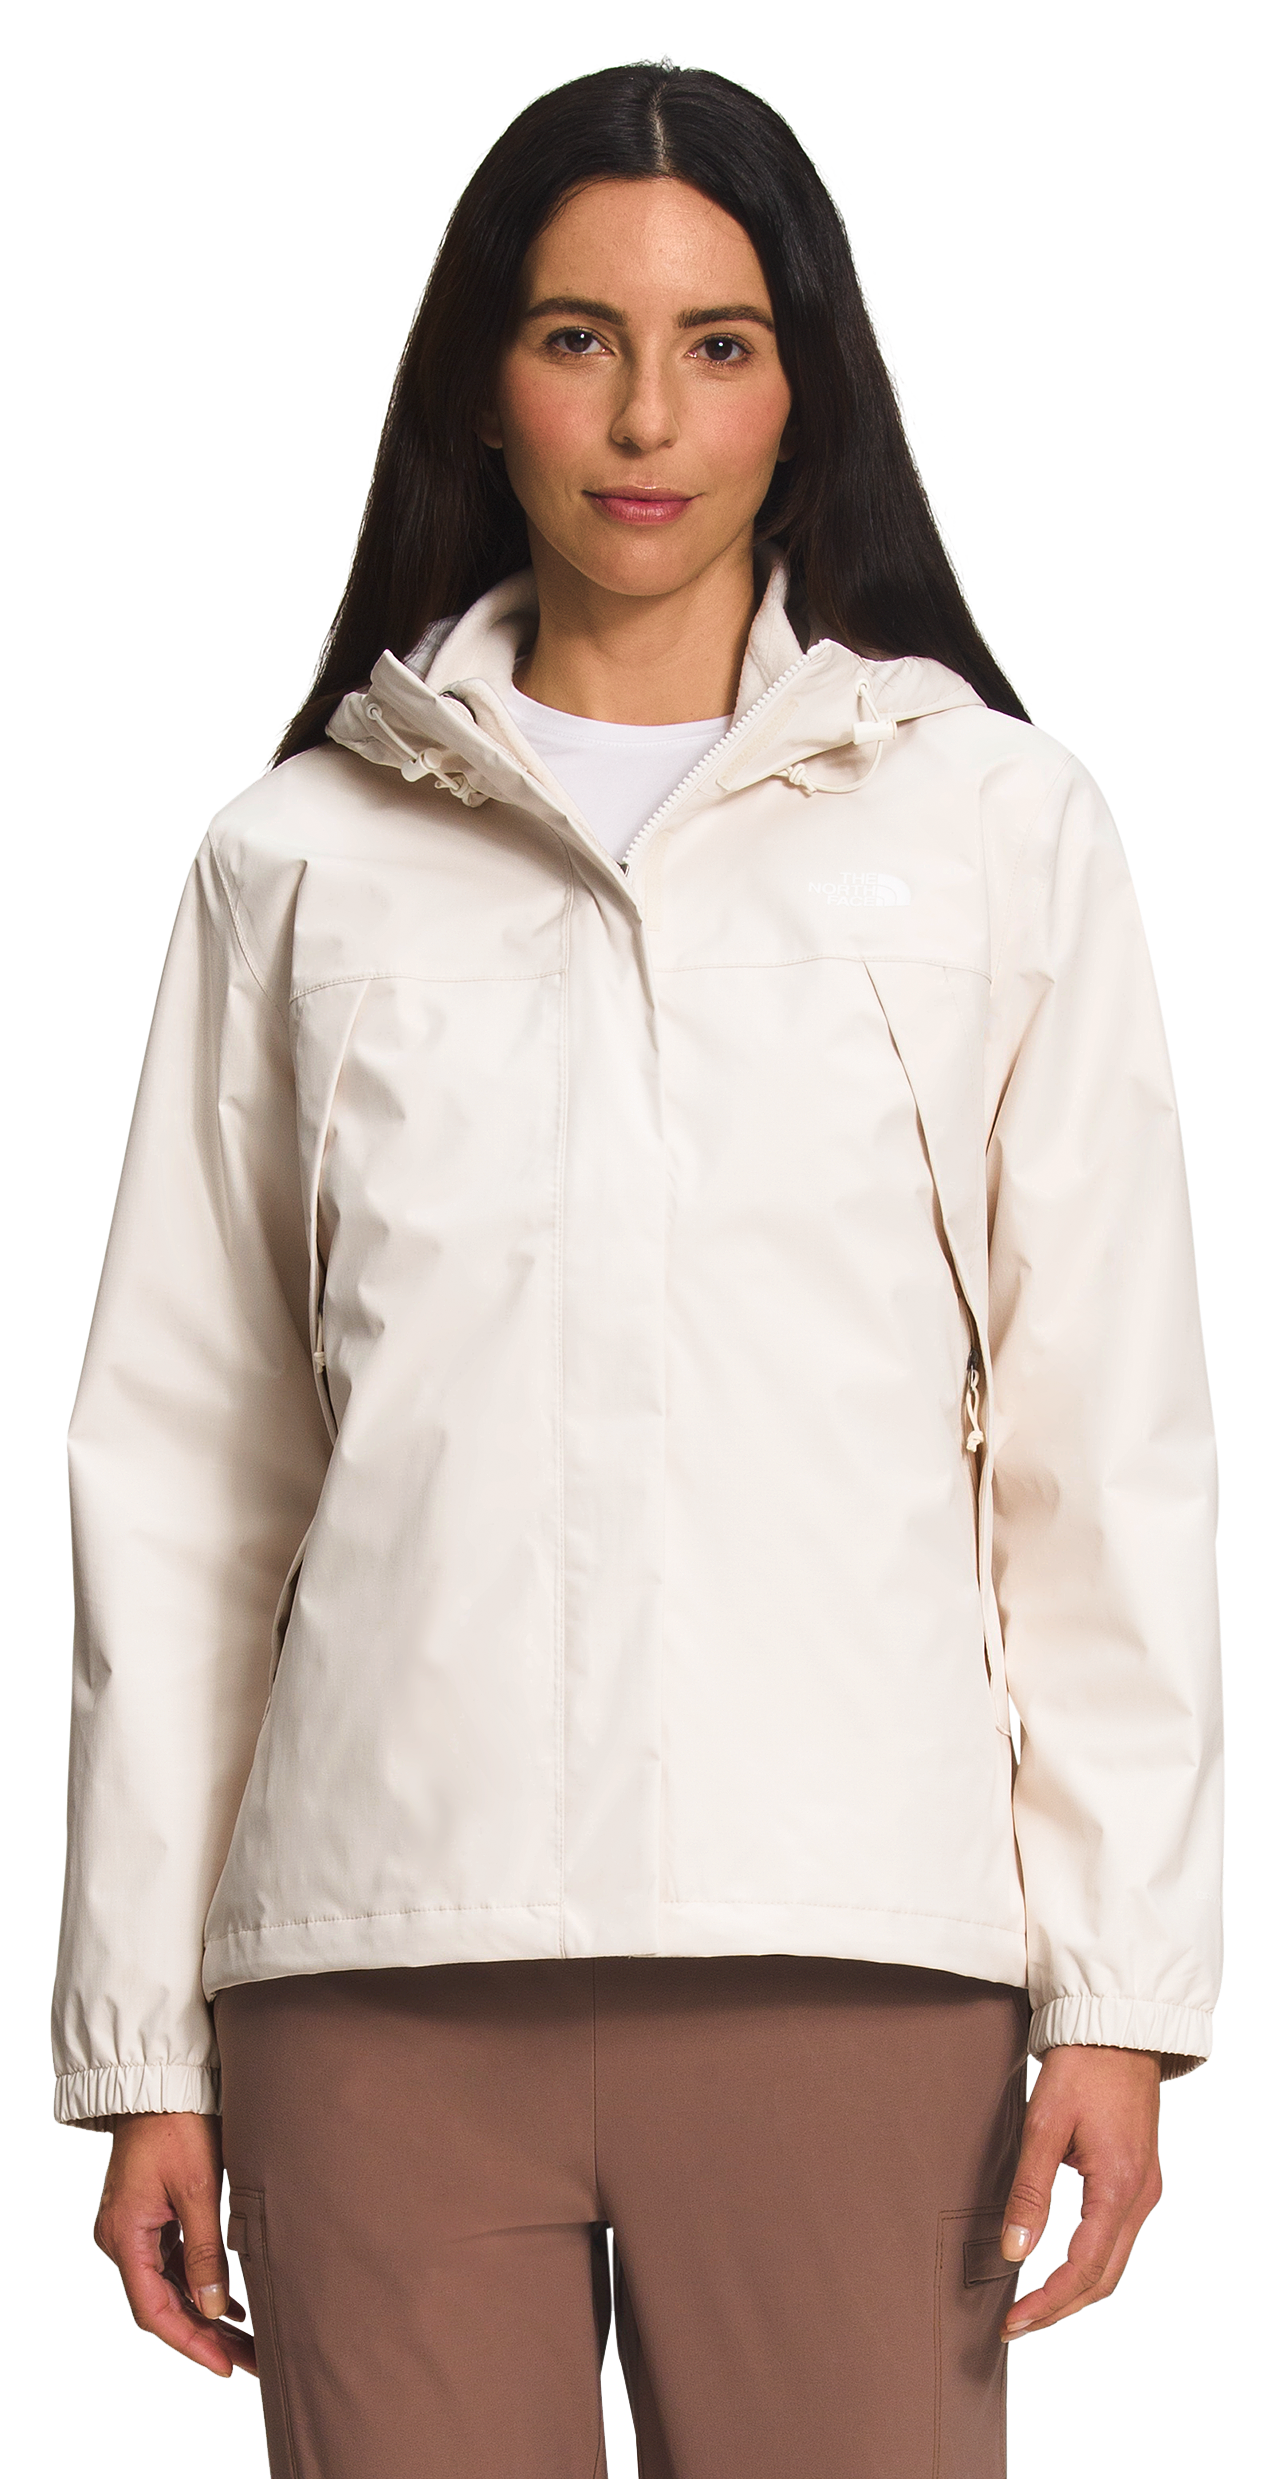 The North Face Antora Triclimate Jacket for Ladies - Gardenia White/Gardenia White - M